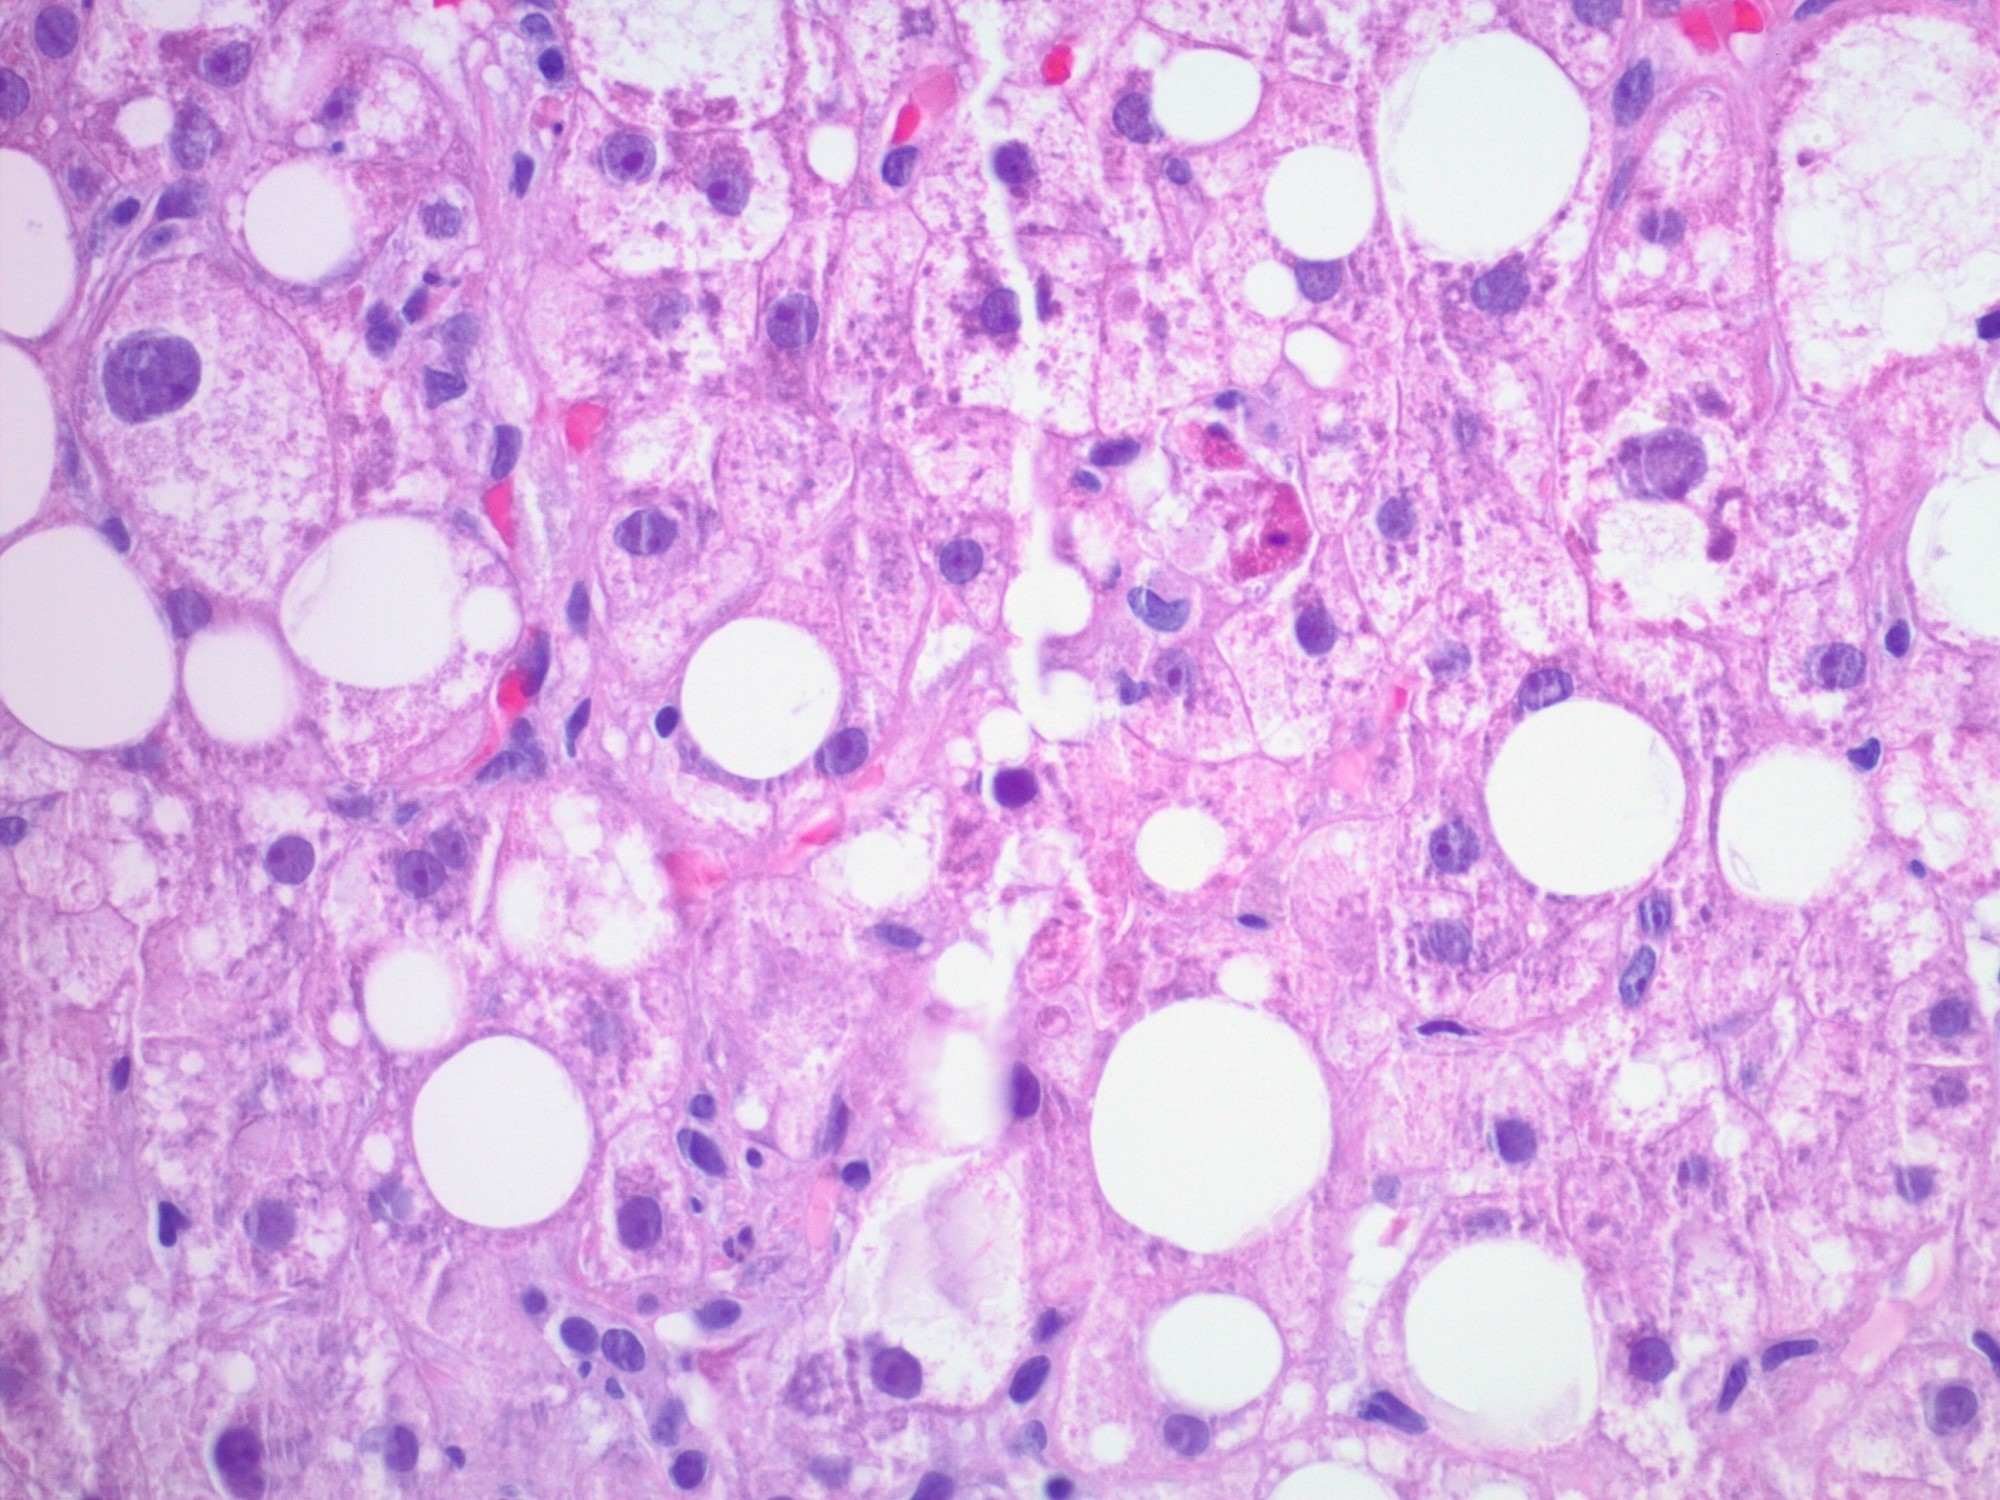 Hepatocyte damage